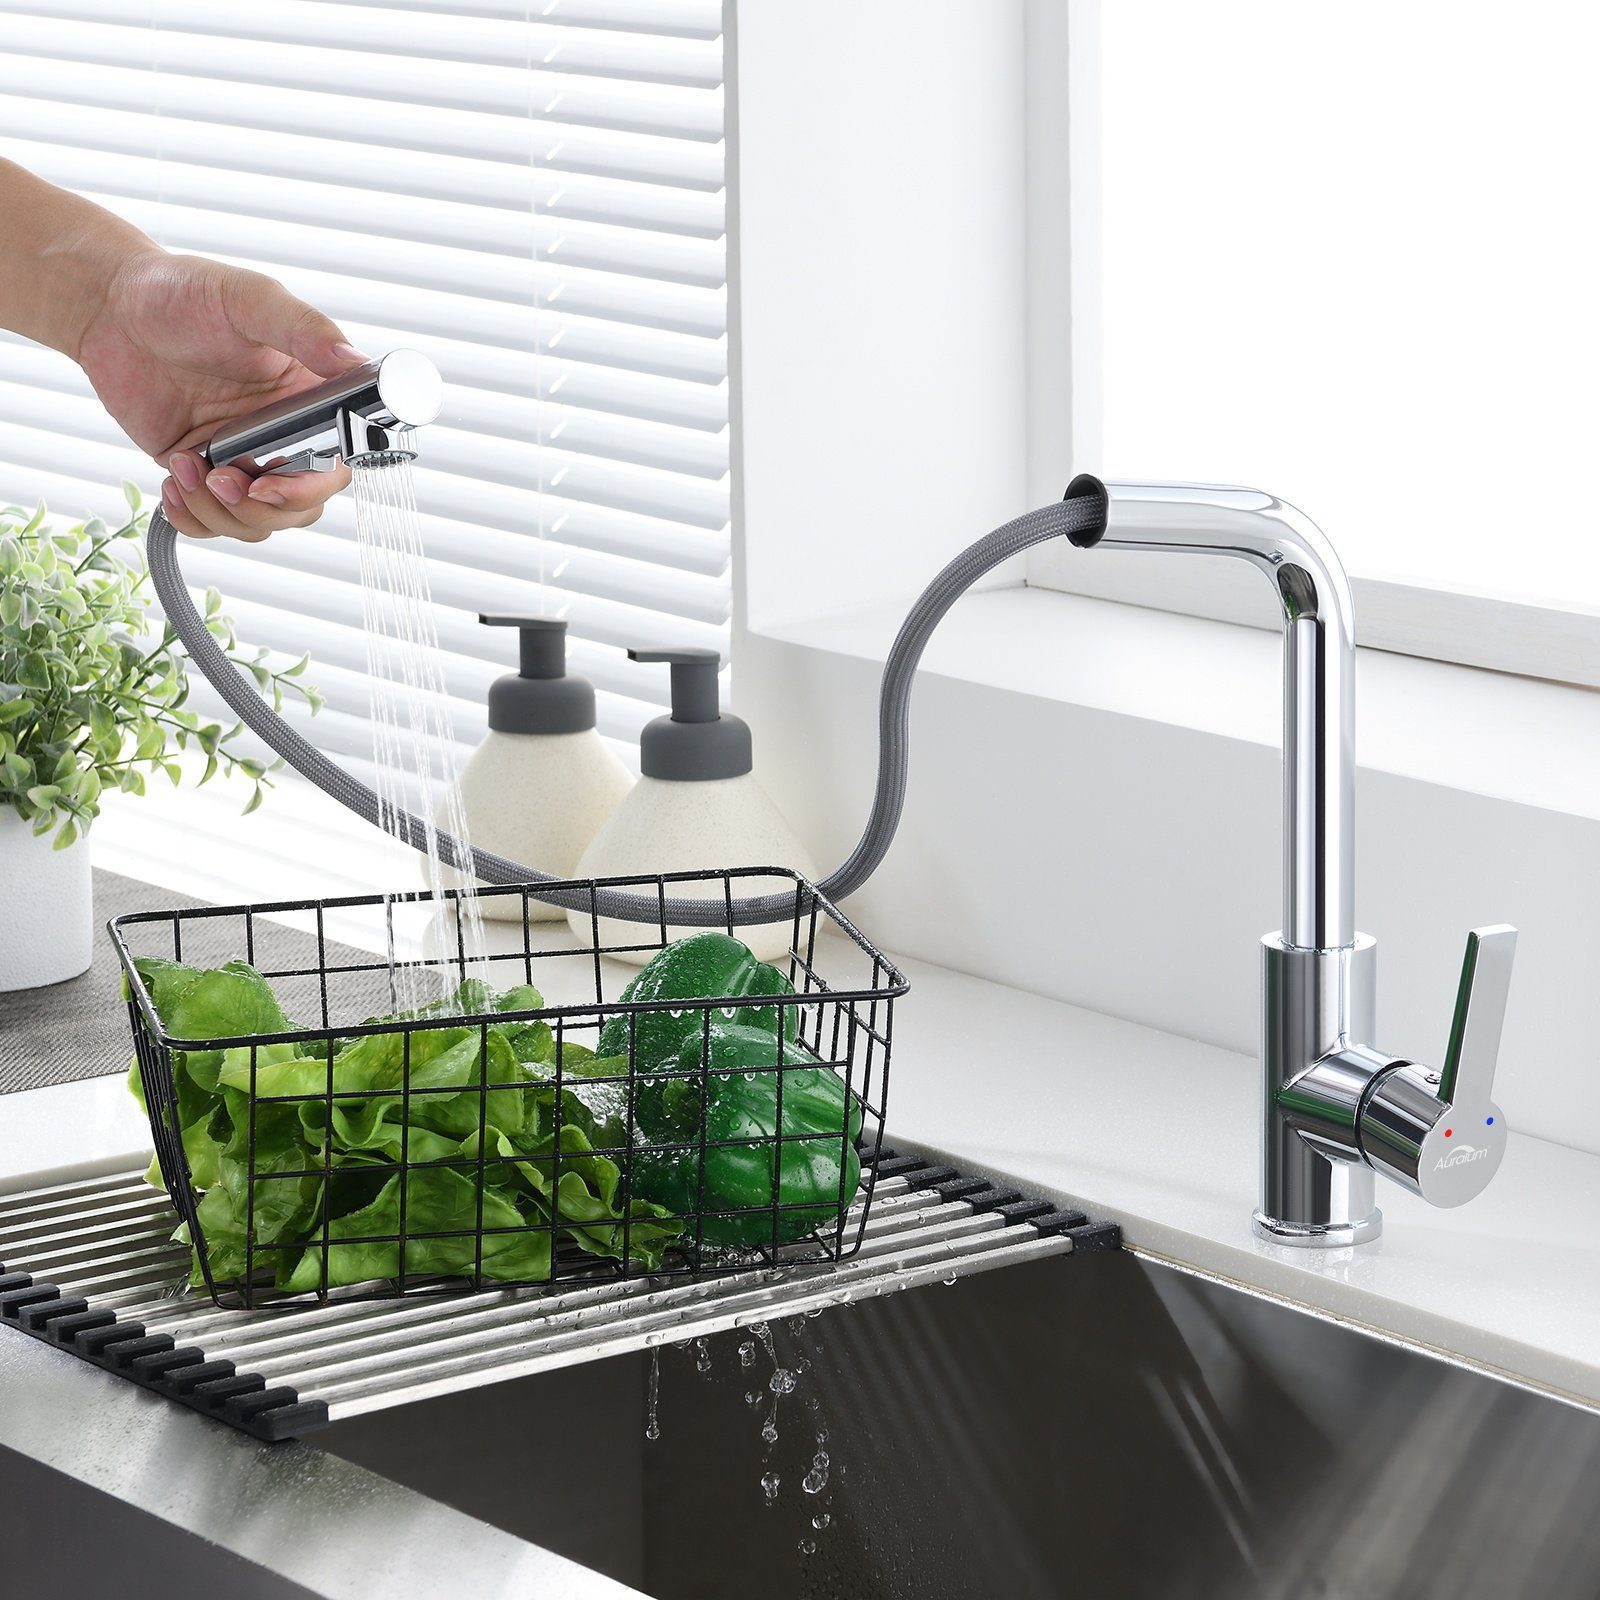 AuraLum pro Küchenarmatur 360° Küche Wasserhahn mit Ausziehbar Brause Mischbatterie Edelstahl mit 2 Strahlarten Herausziehbarer Brause